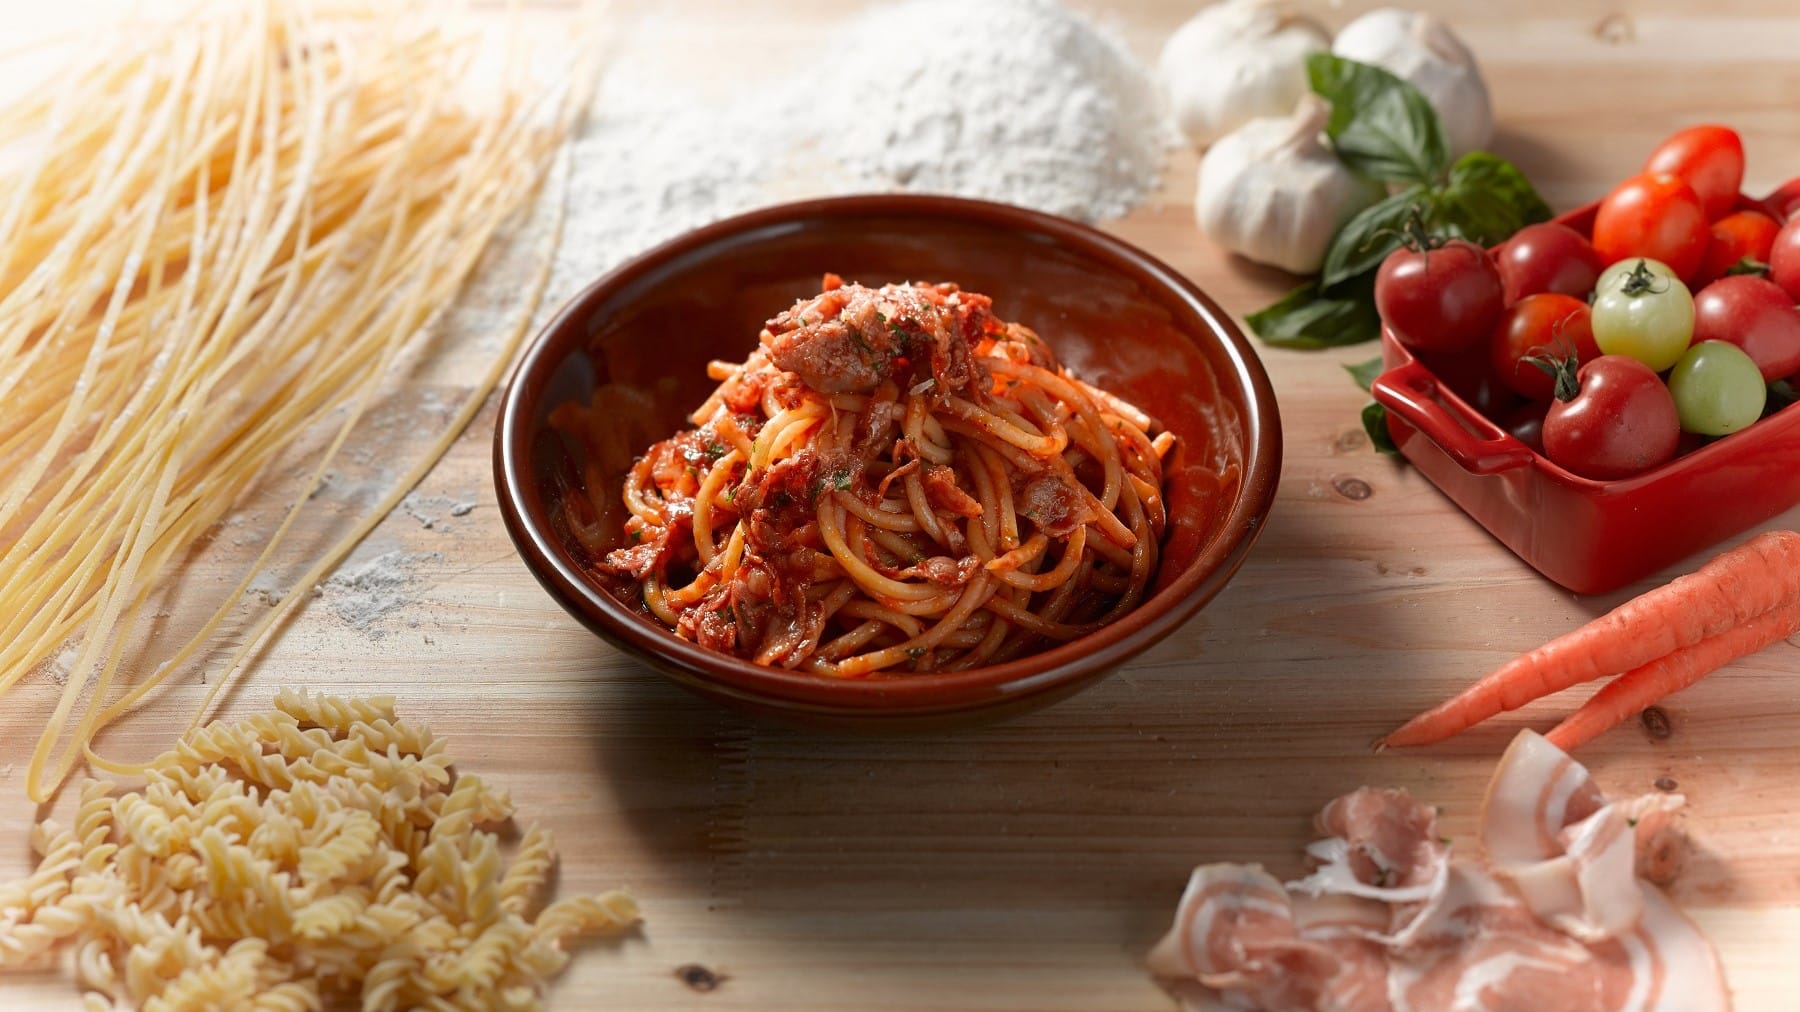 In einer Schale angerichtete Spaghetti-Pasta mit geräuchertem Schinken aus Parma und Tomatensauce, umgeben von den Zutaten der Sauce wie Knoblauch, frischen Tomaten und dem Parmaschinken.